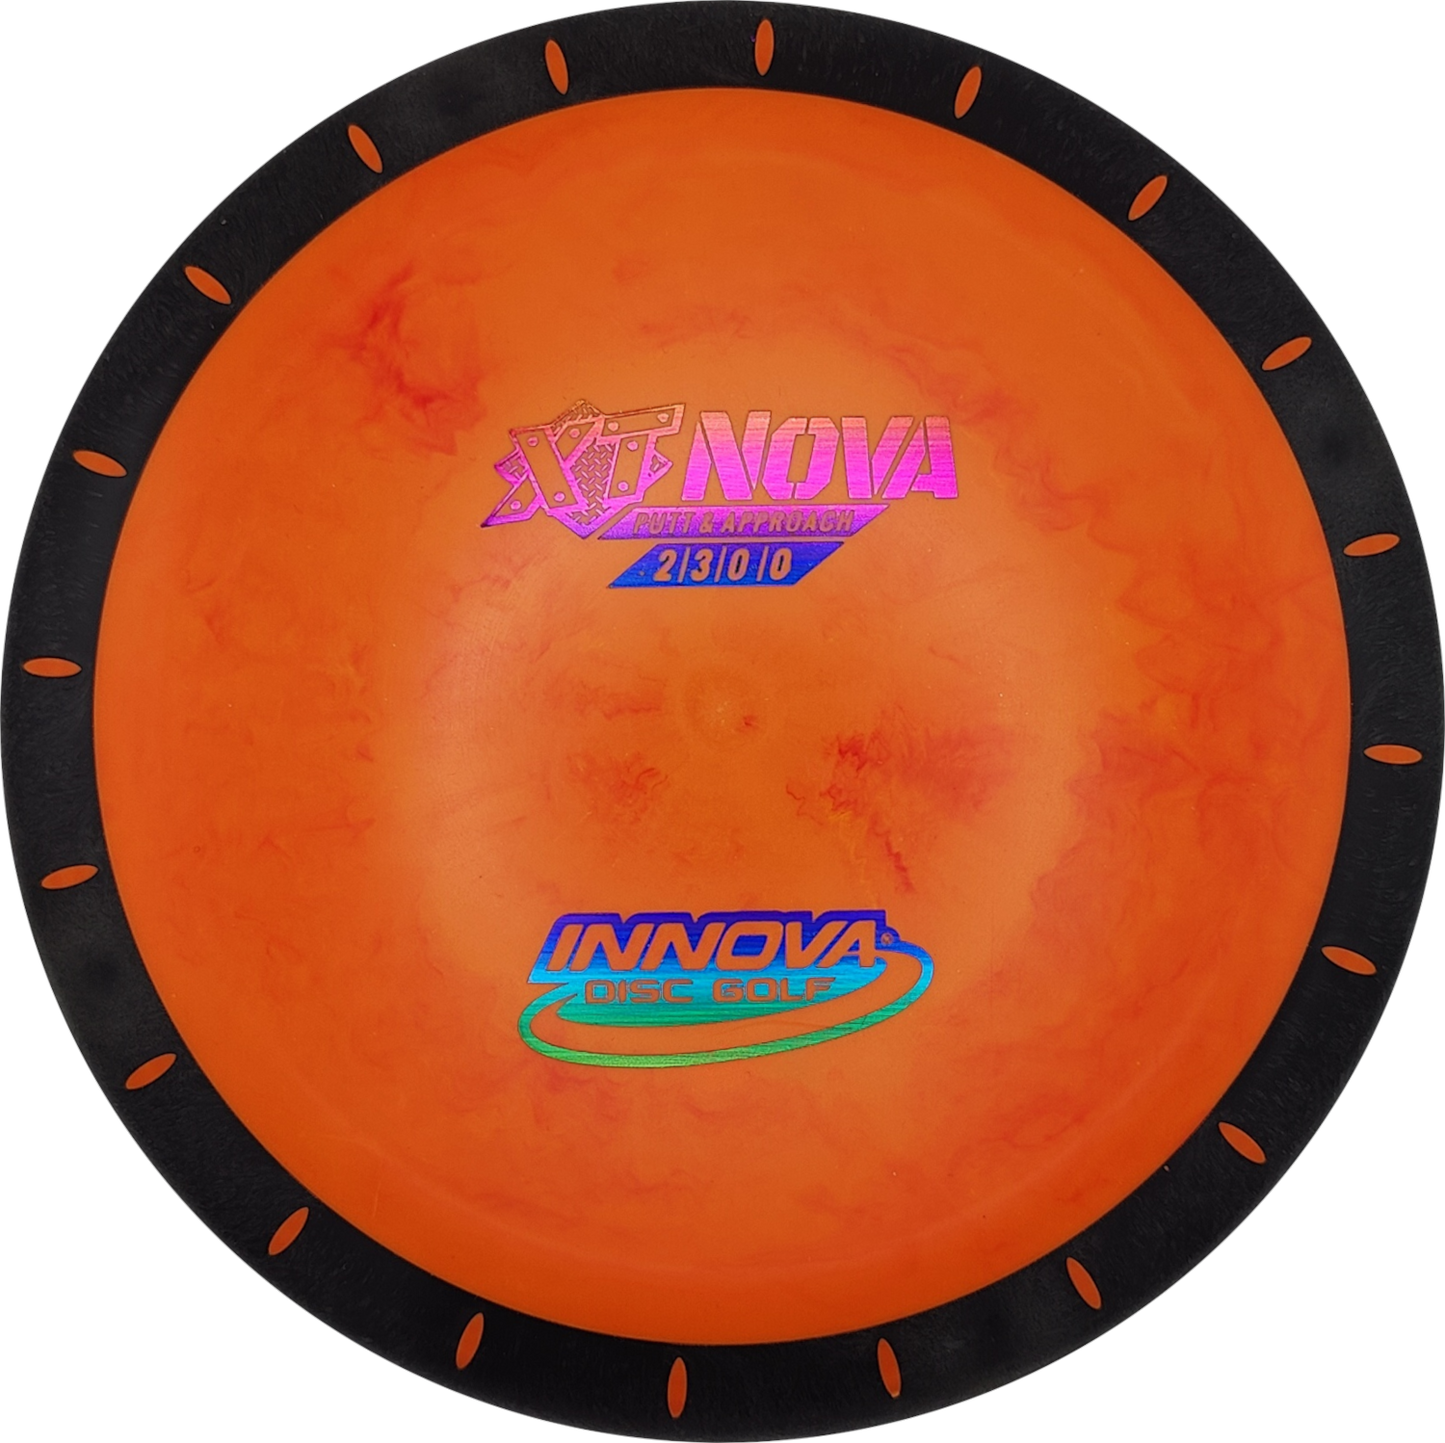 Innova Overmold XT Nova